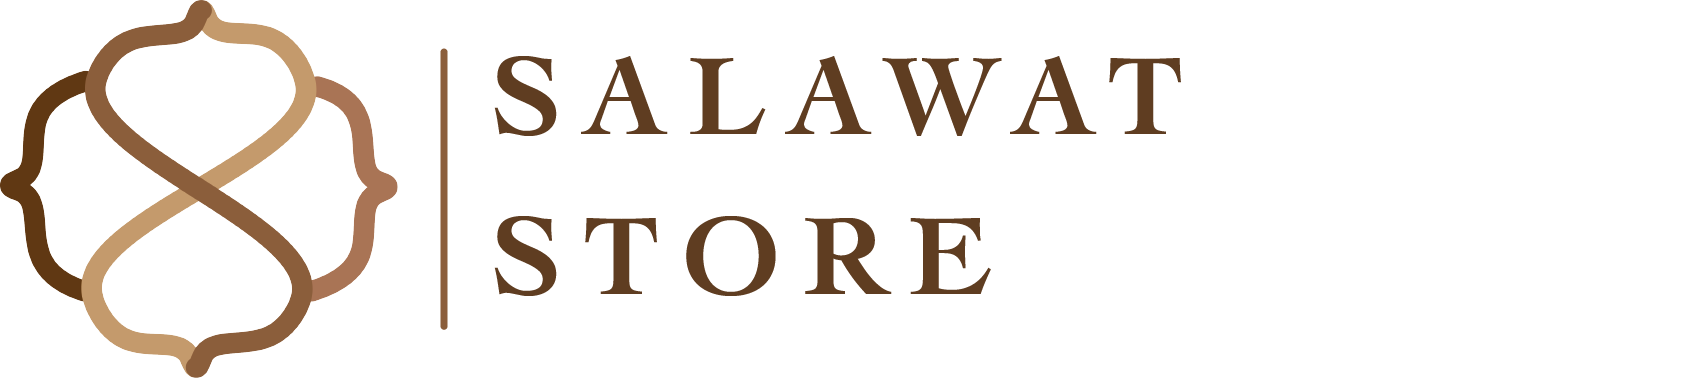 Salawatstore.com